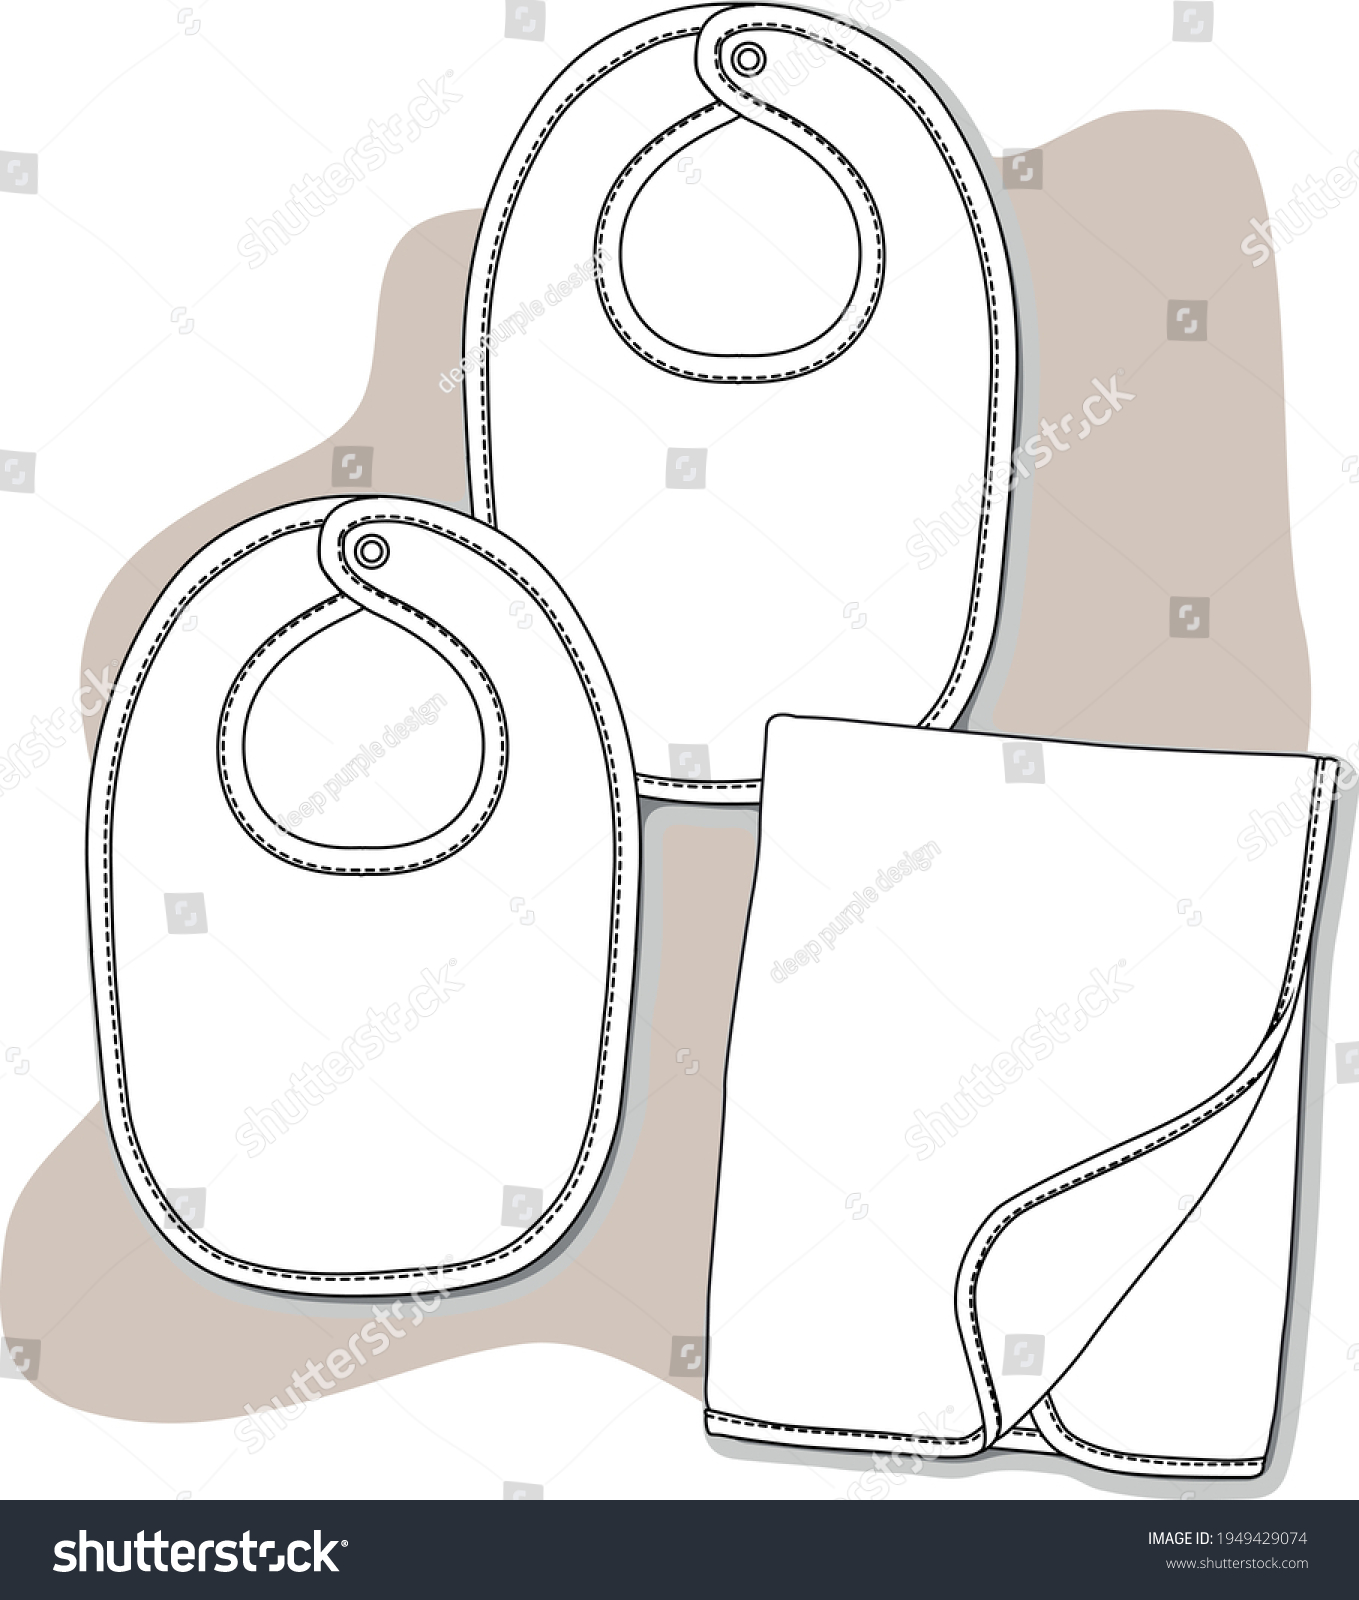 SVG of Baby hat, shoes and bib design flat sketch. vector illustration svg